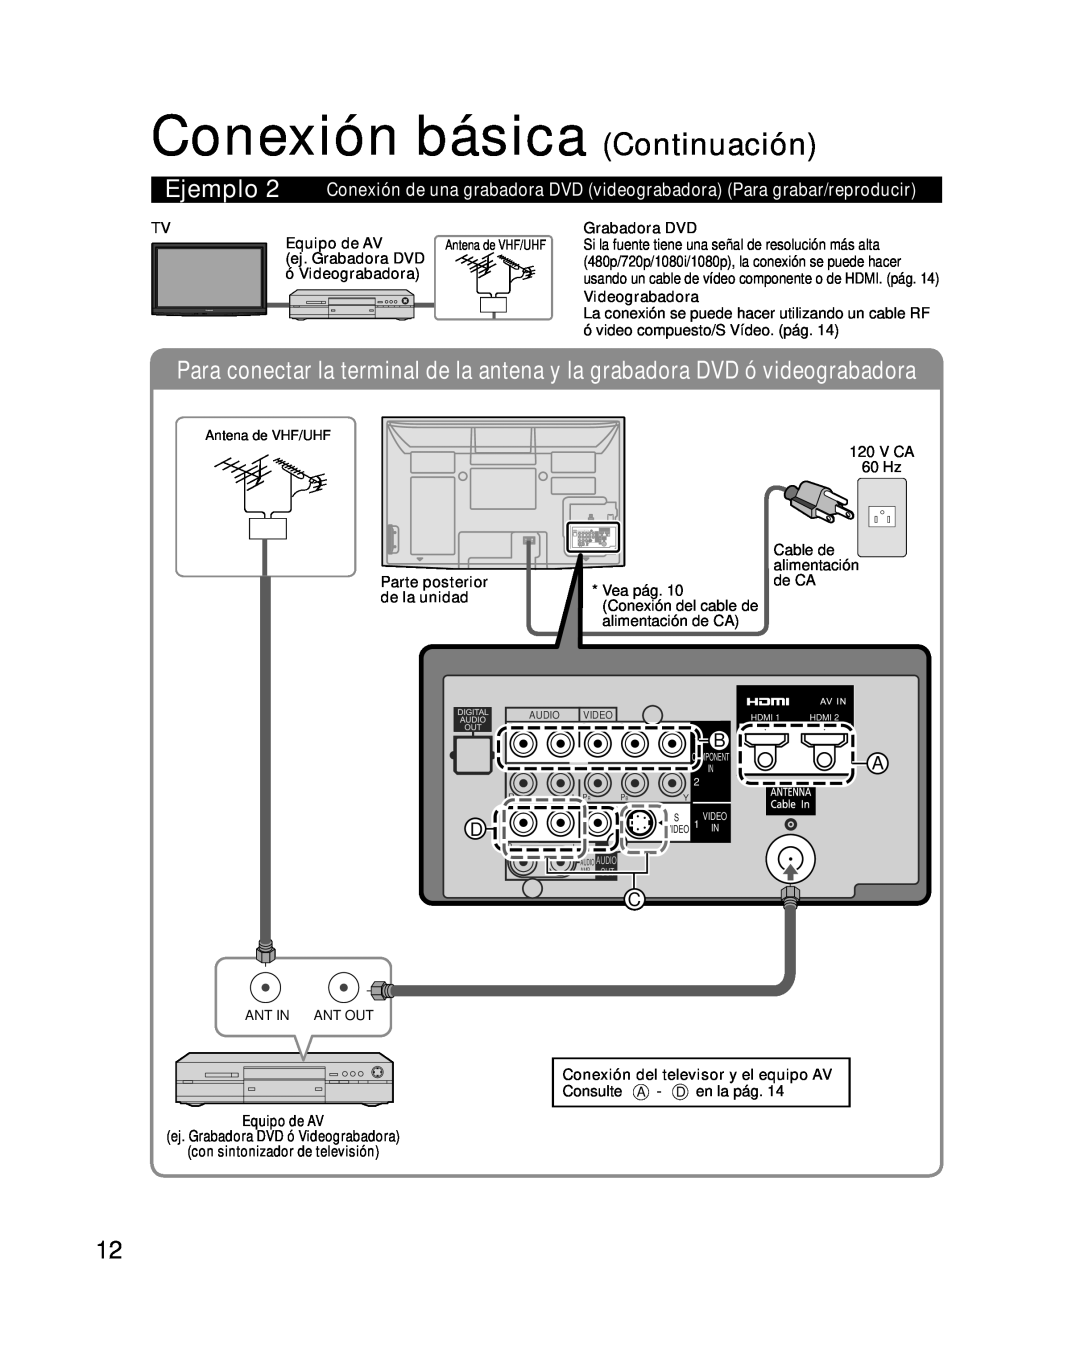 Panasonic TC-P54G10 Conexión básica Continuación, Antena de VHF/UHF, 480p/720p/1080i/1080p, la conexión se puede hacer 